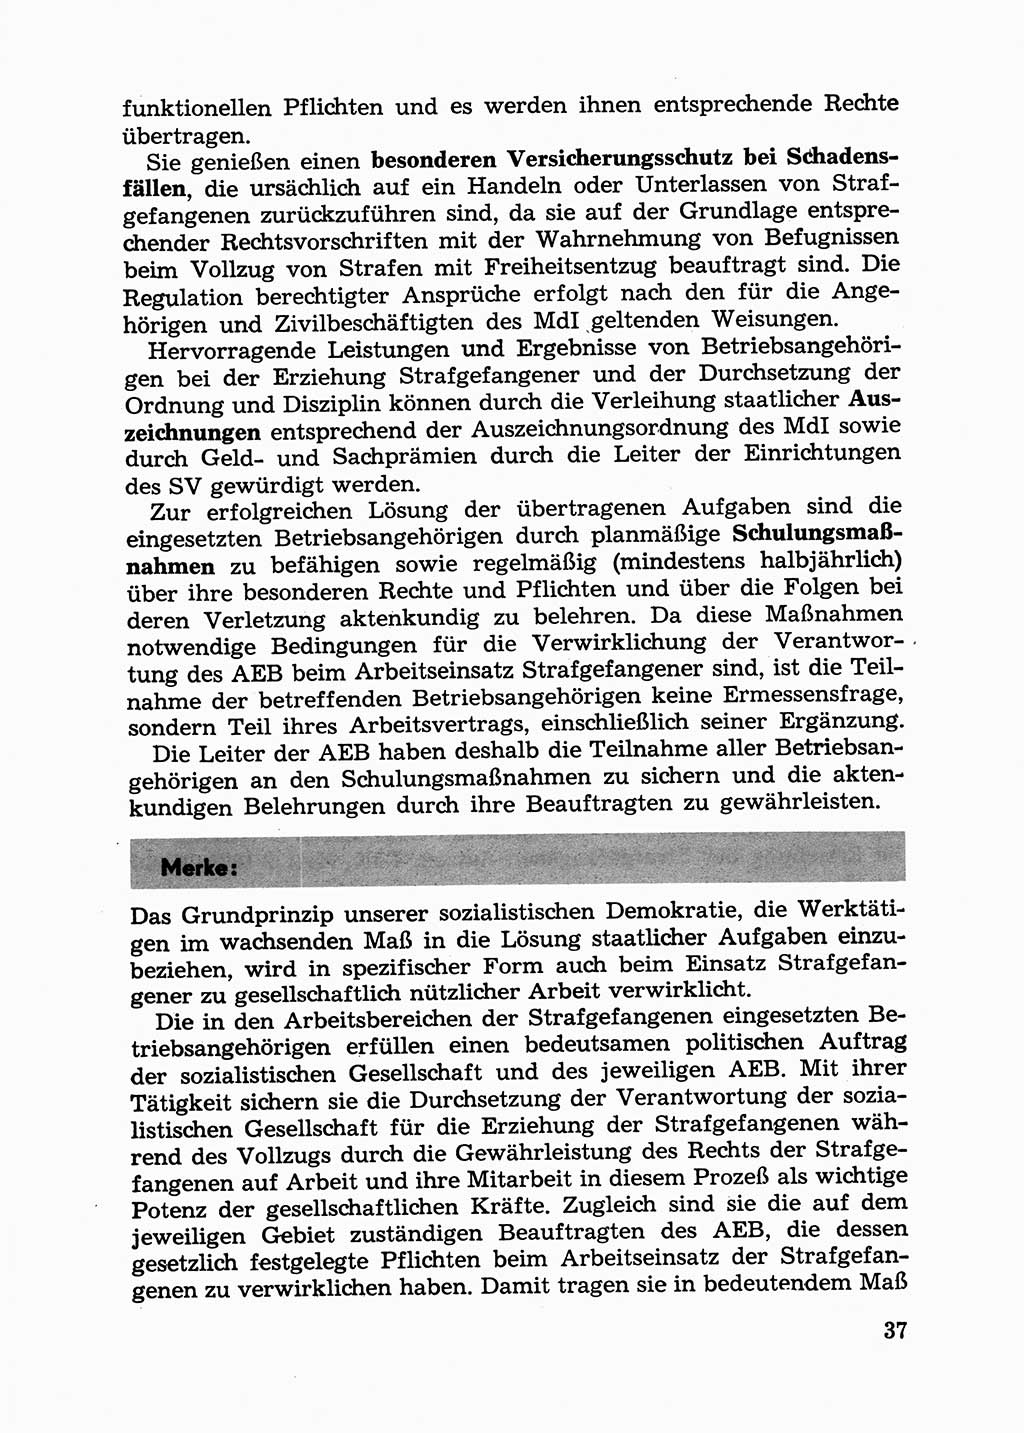 Handbuch für Betriebsangehörige, Abteilung Strafvollzug (SV) [Ministerium des Innern (MdI) Deutsche Demokratische Republik (DDR)] 1981, Seite 37 (Hb. BA Abt. SV MdI DDR 1981, S. 37)